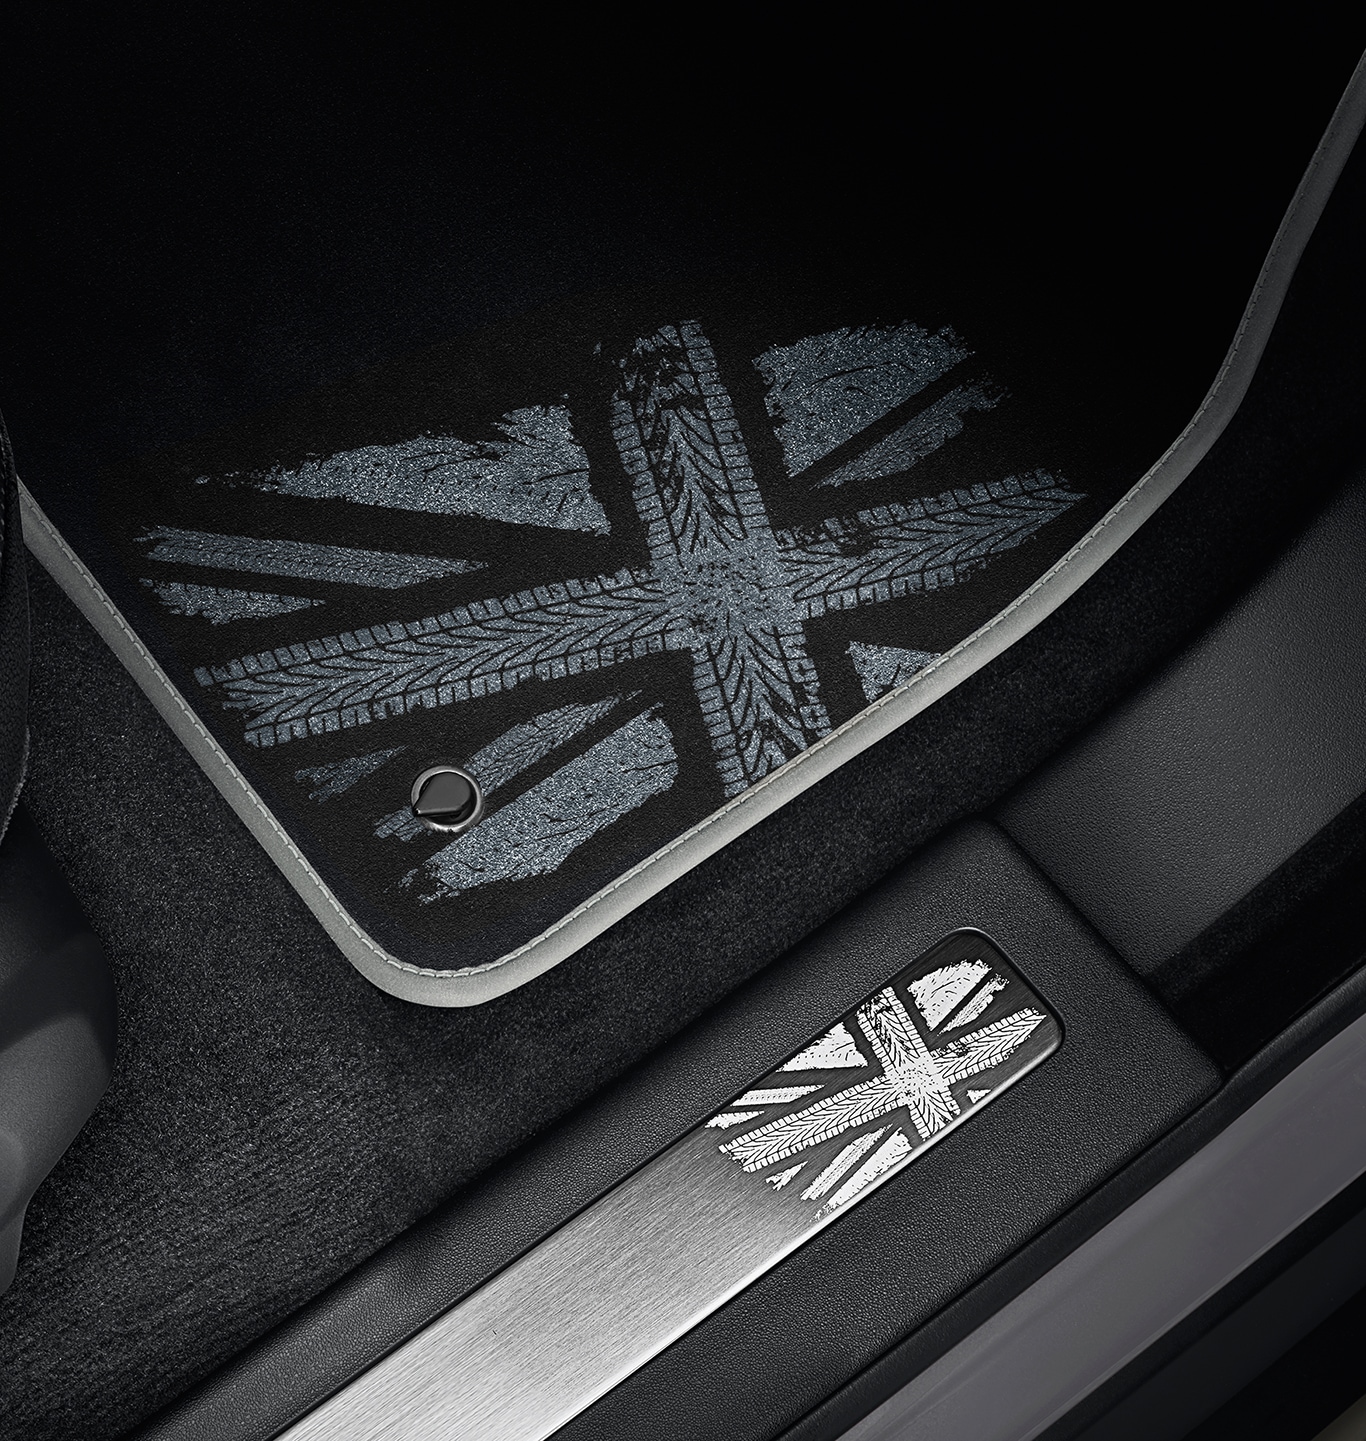 地毯垫套装-英国国旗